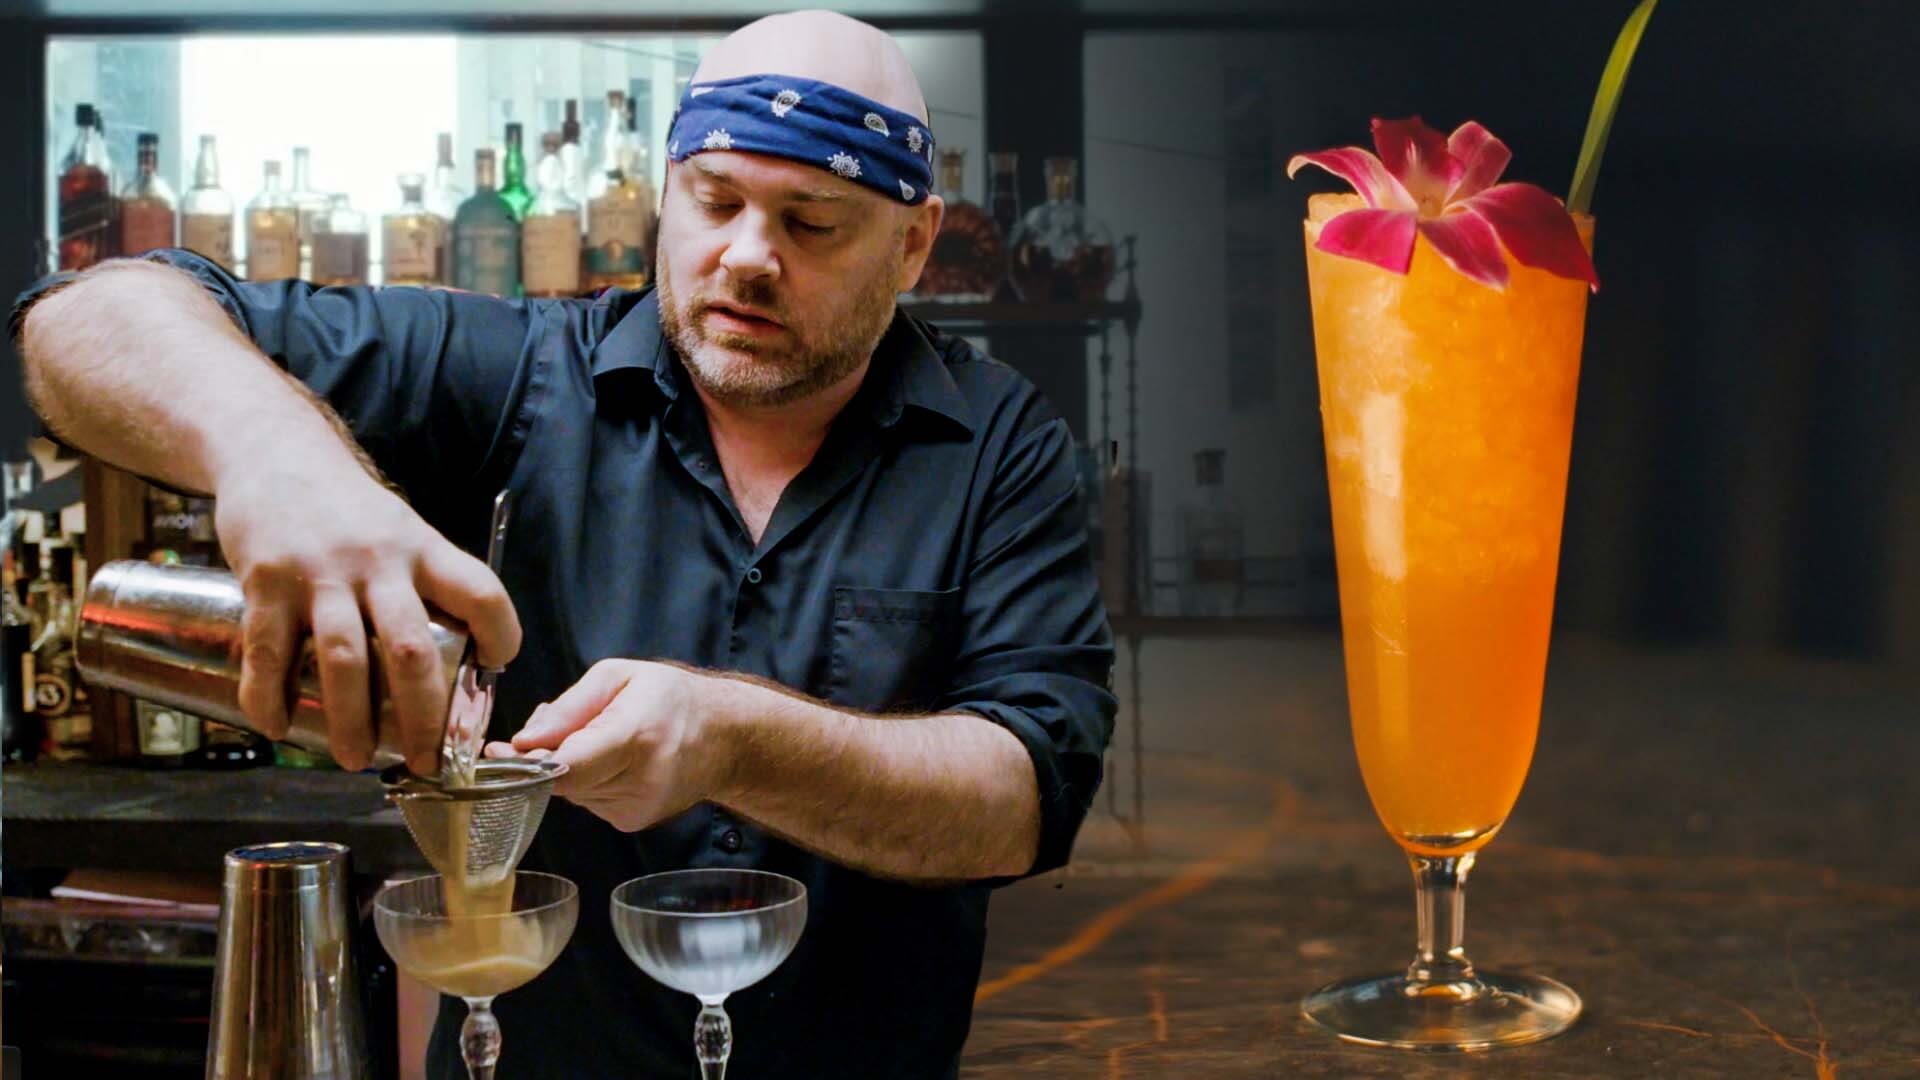 10 Best Bartending Kits 2023 - Cocktail Making Sets for Home Bar